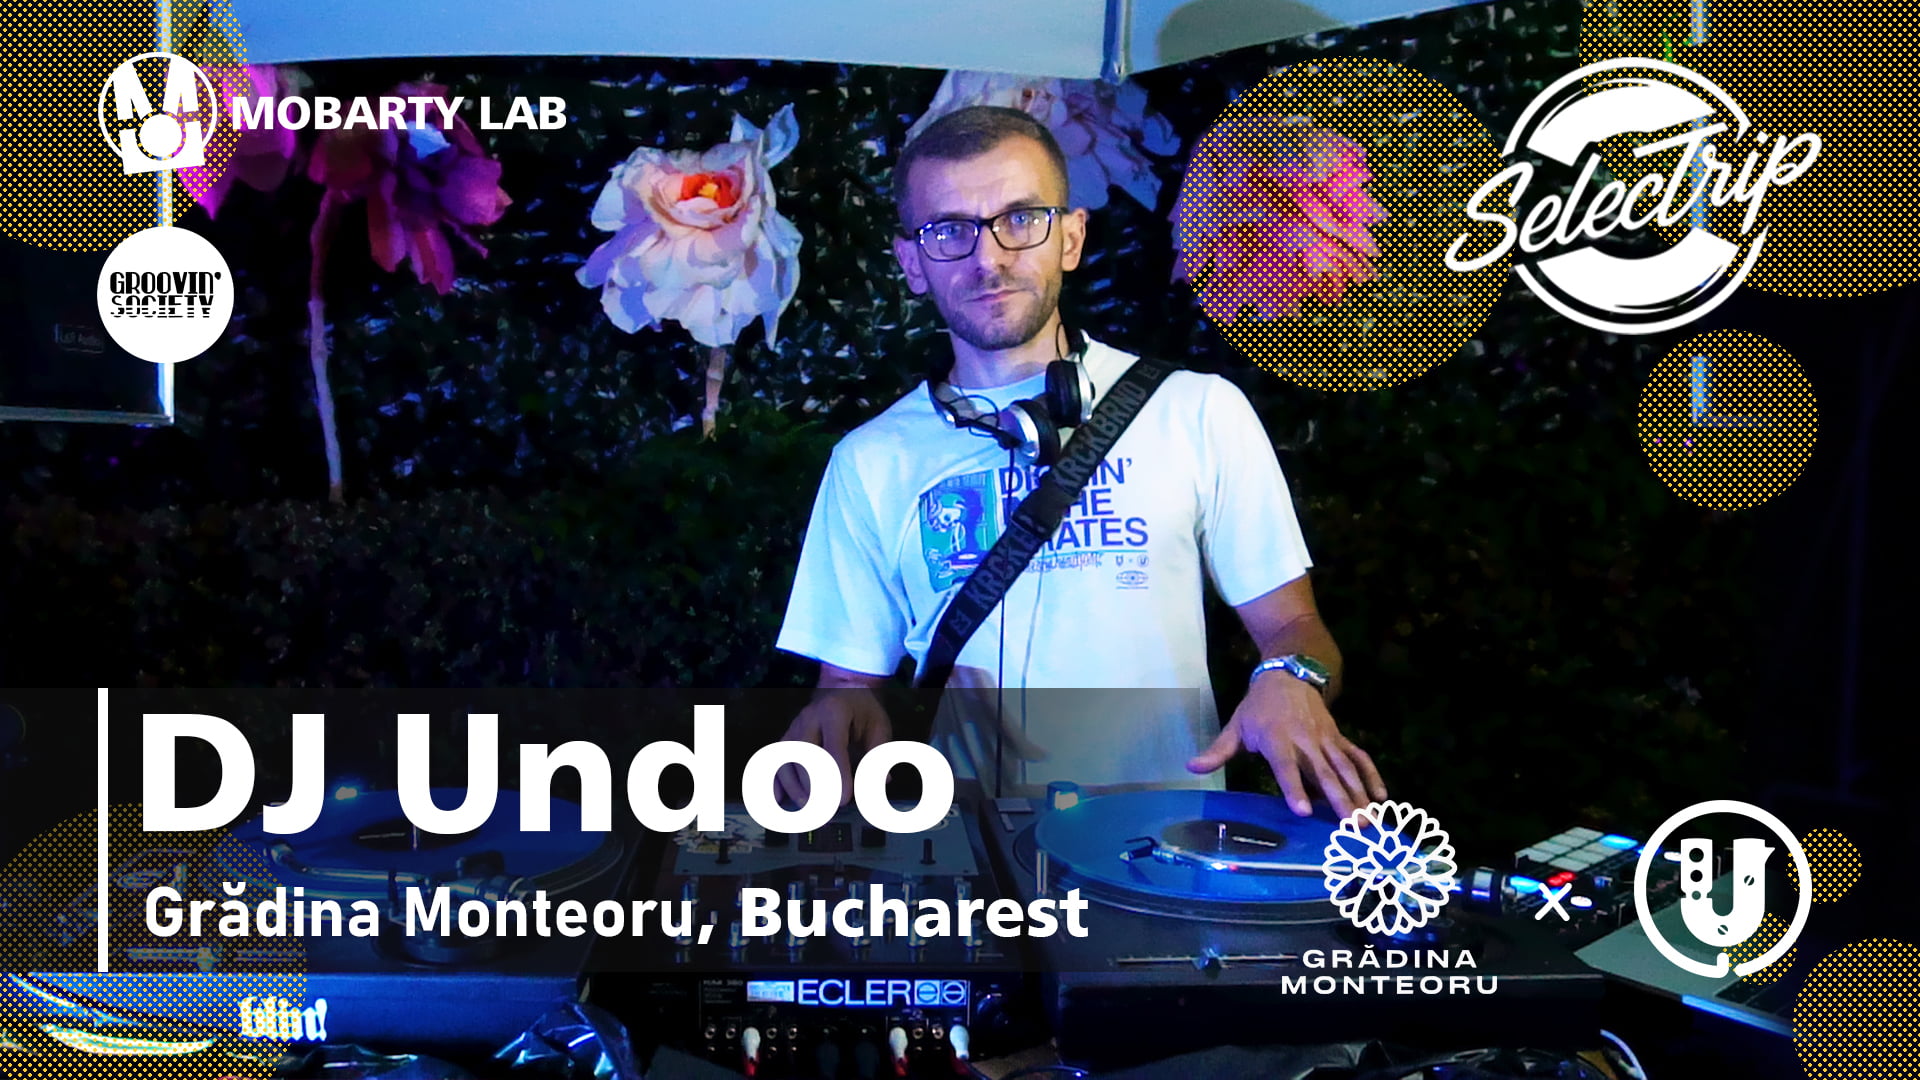 Live mix - DJ Undoo | SELECTRIP - Grădina Monteoru, Bucharest